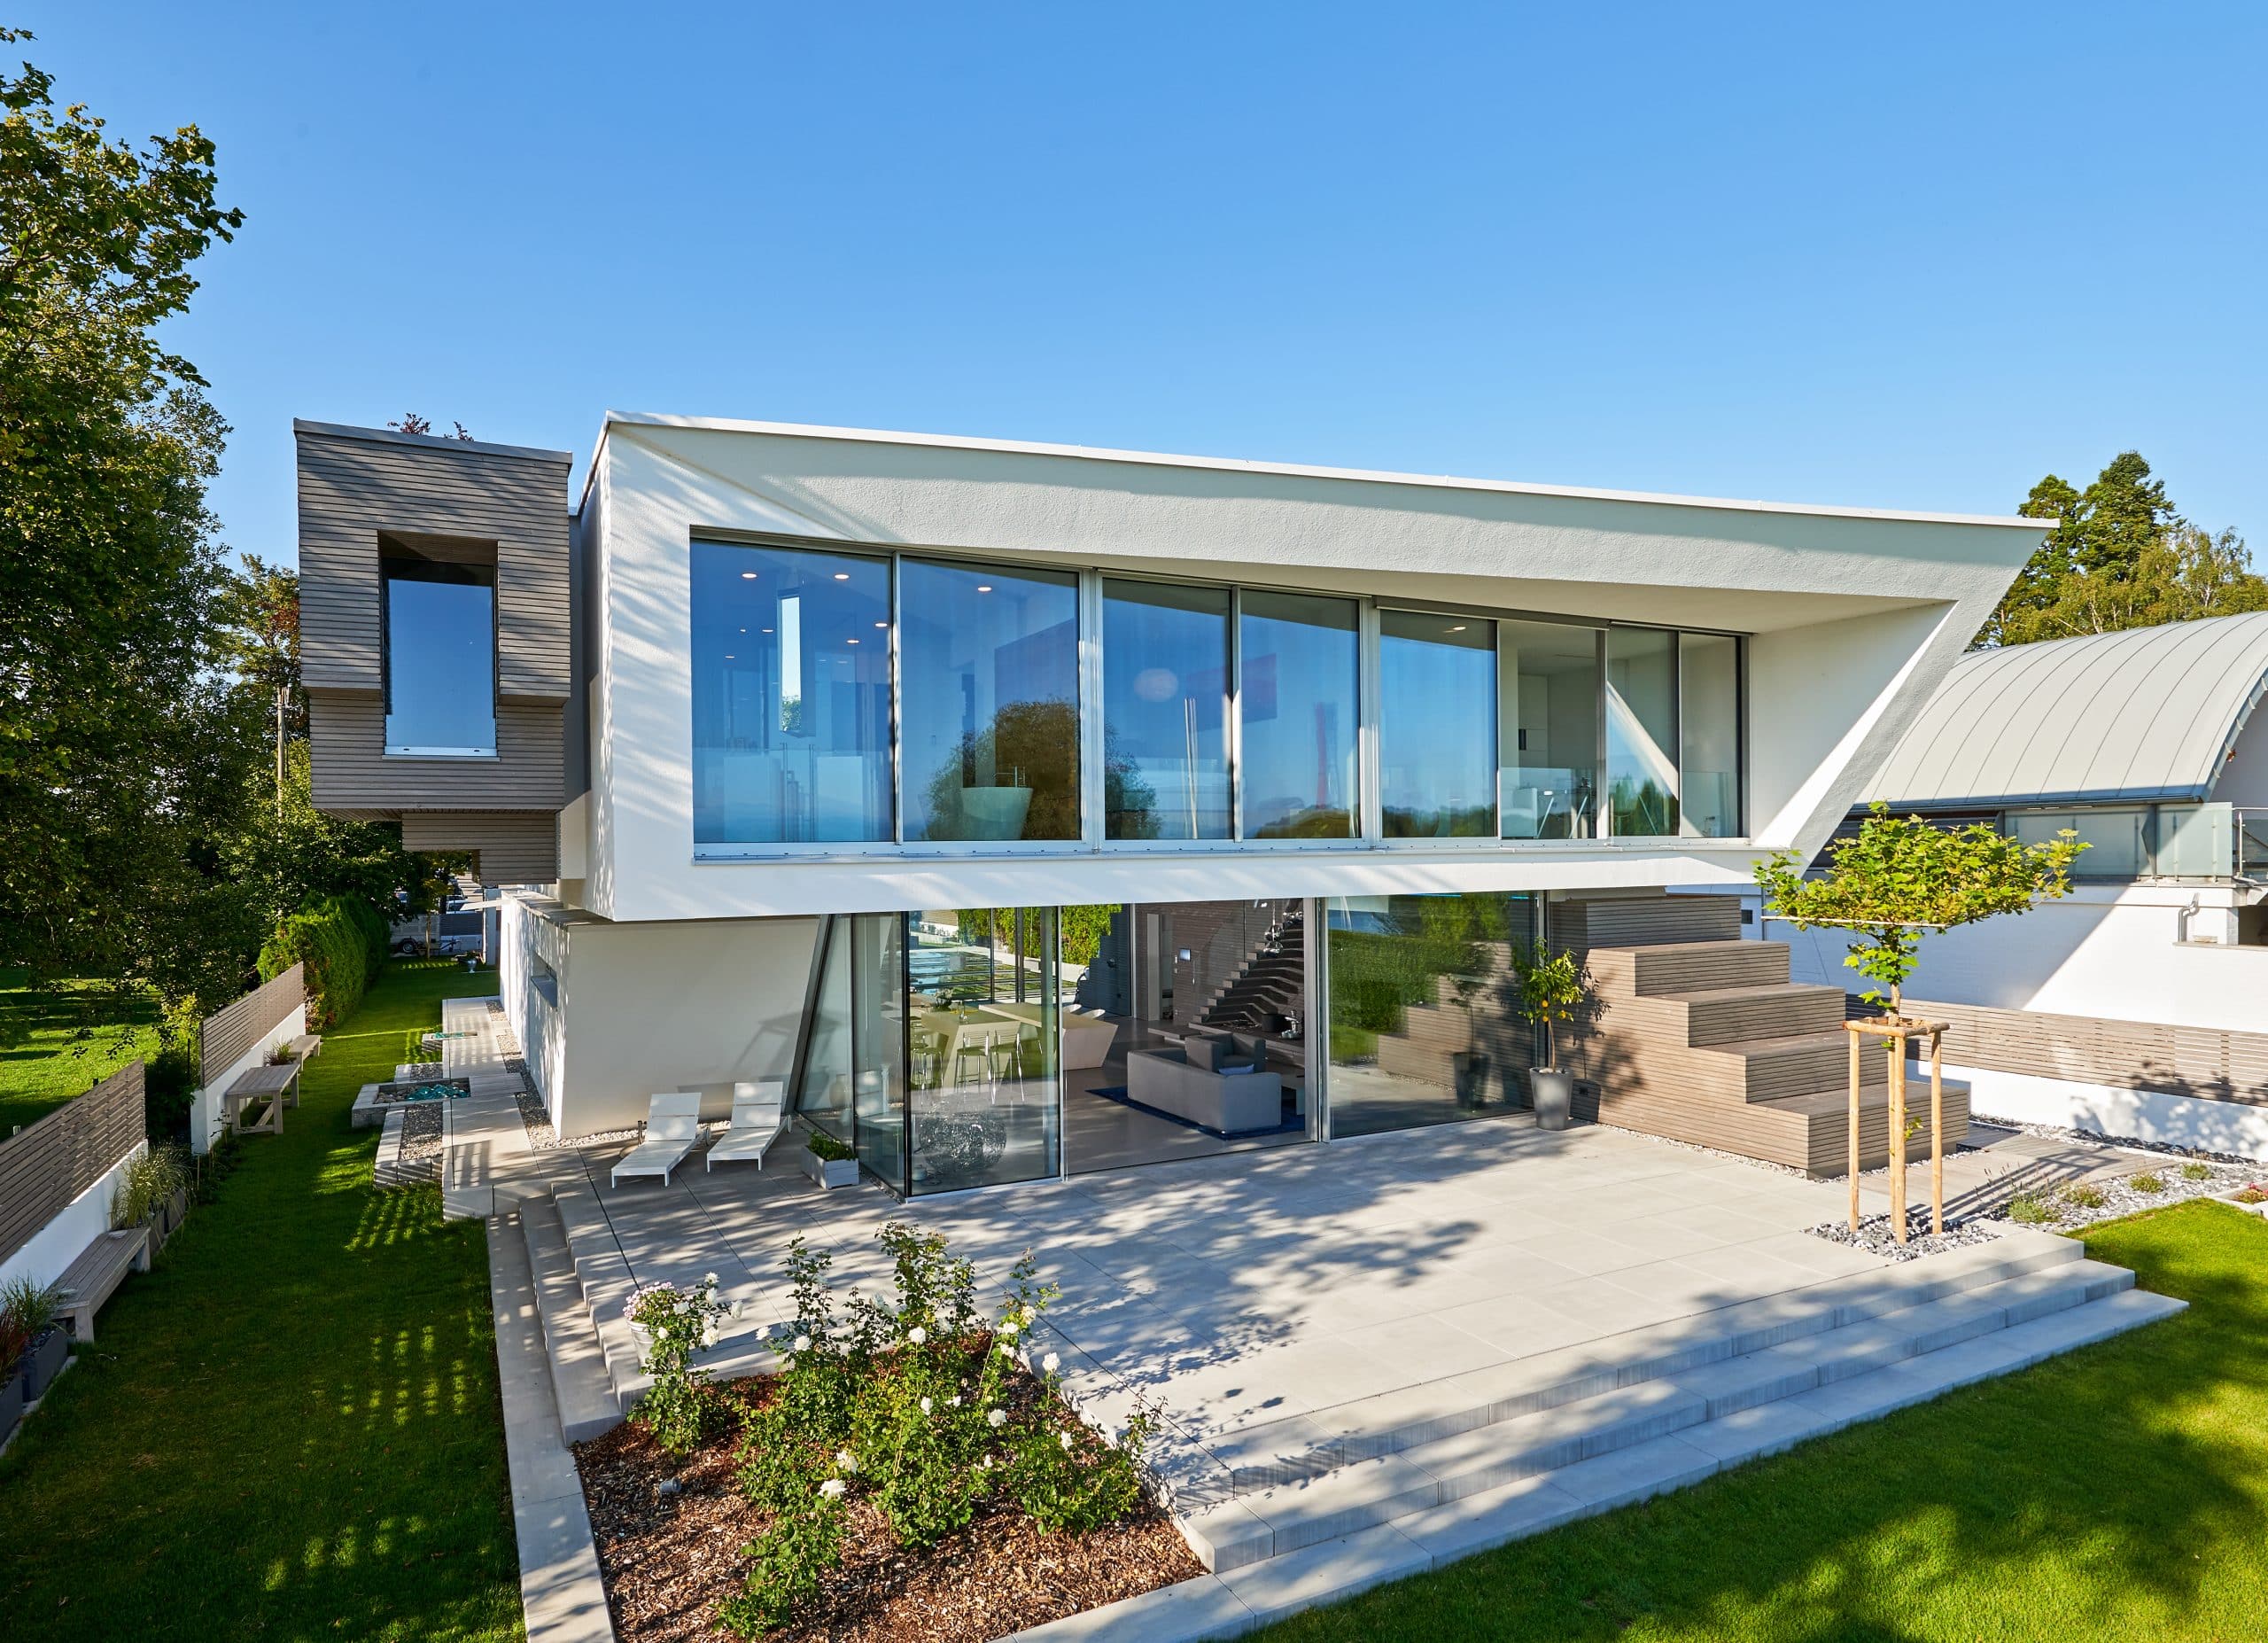 Solarlux zeigt die Villa Cero am Bodensee bei Tag, wodurch man die Fliesen und Treppe auf der Terrasse und die Glasfaltwand gut erkennen kann.